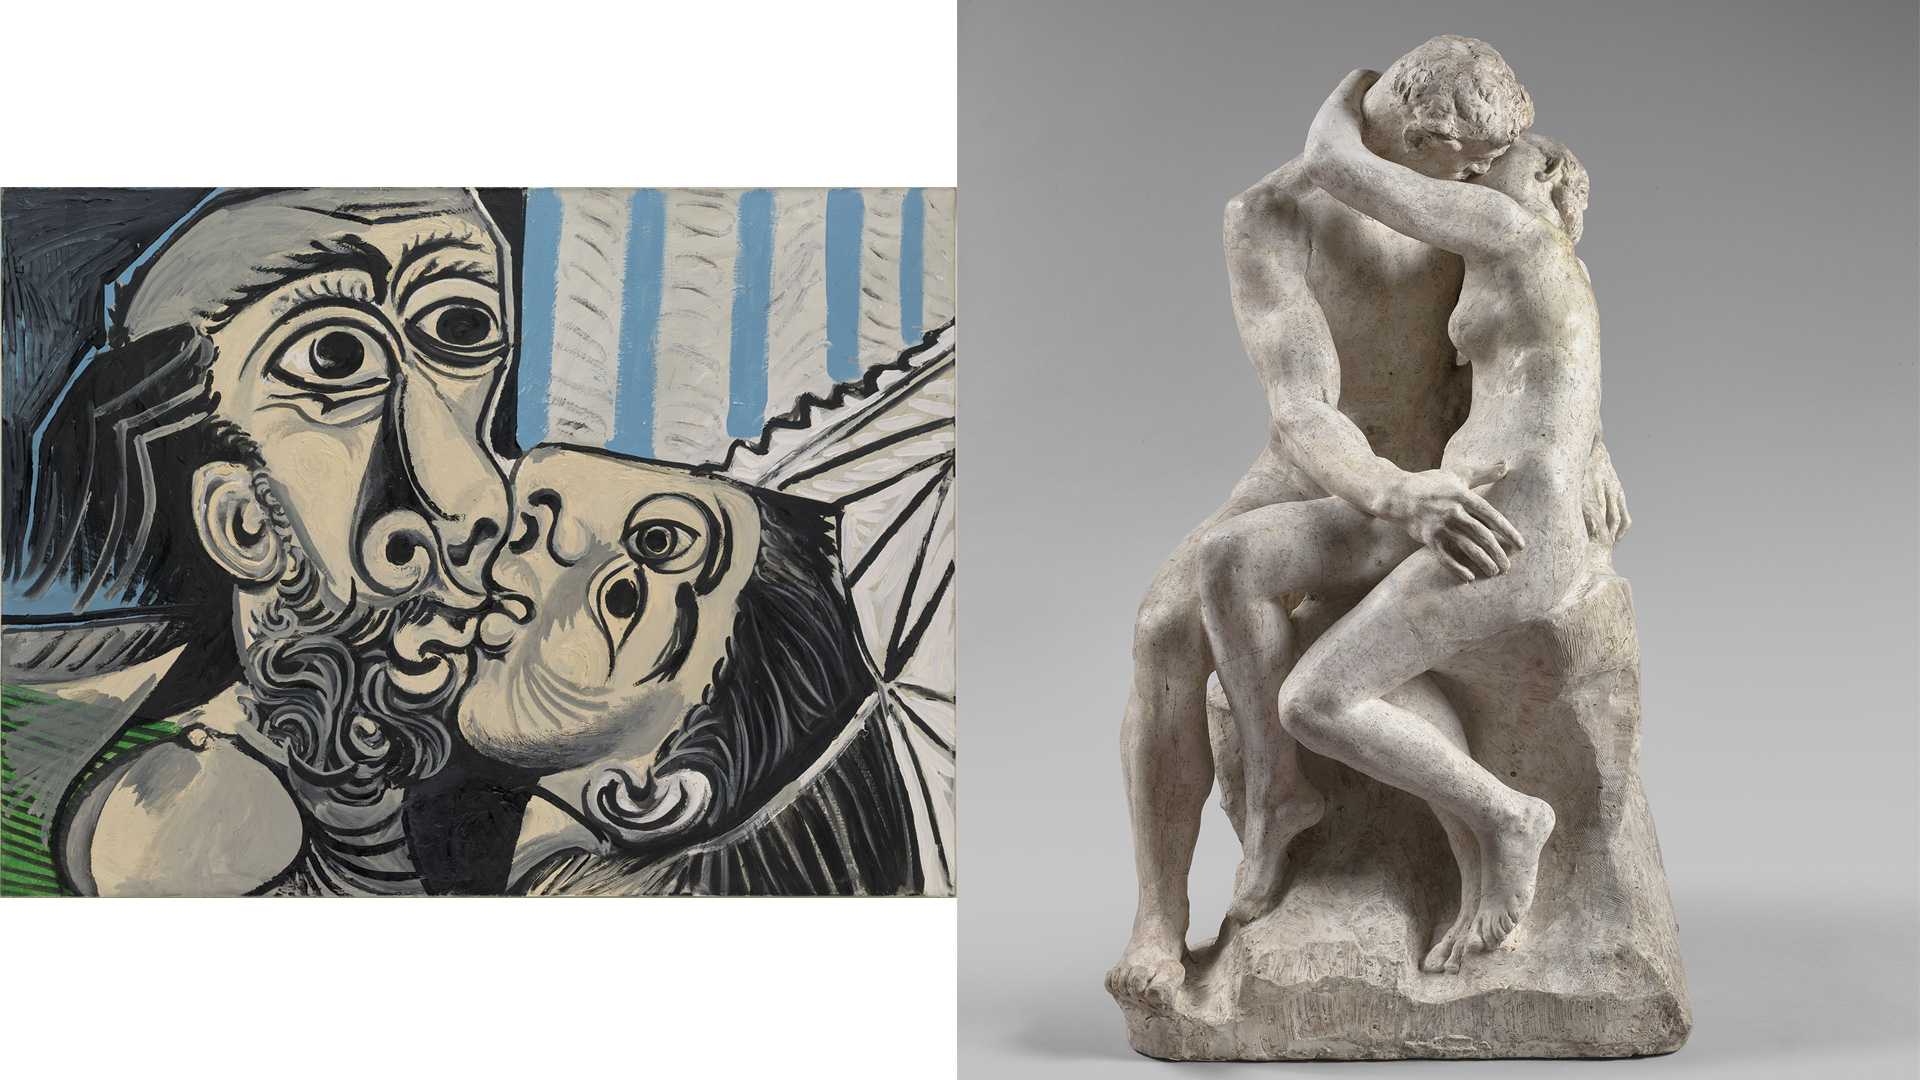 Pablo Picasso, « Le Baiser », Mougins, 26 octobre 1969, Huile sur toile, 97 x 130 cm, Paris, Musée national Picasso-Paris, © Succession Picasso 2020 ; Auguste Rodin, « Le Baiser », vers 1885, plâtre patiné, 86 x 51,5 x 55,5 cm, Paris, Musée Rodin